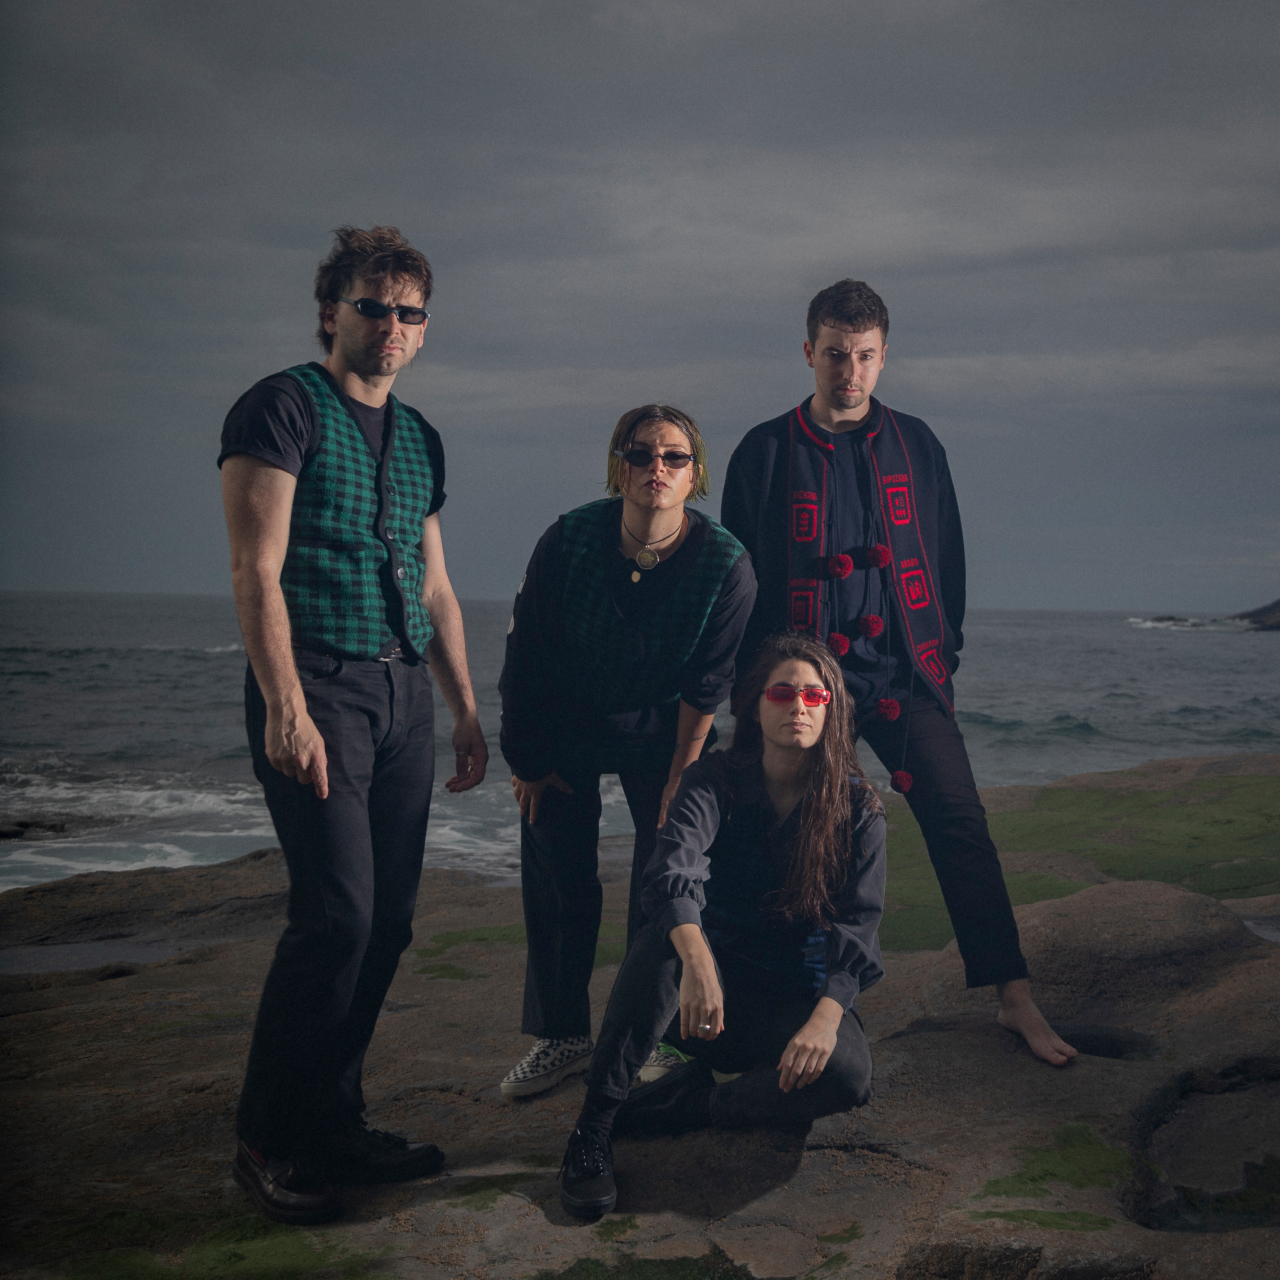 Die Bandmitglieder von "Belako" posieren am Meer.